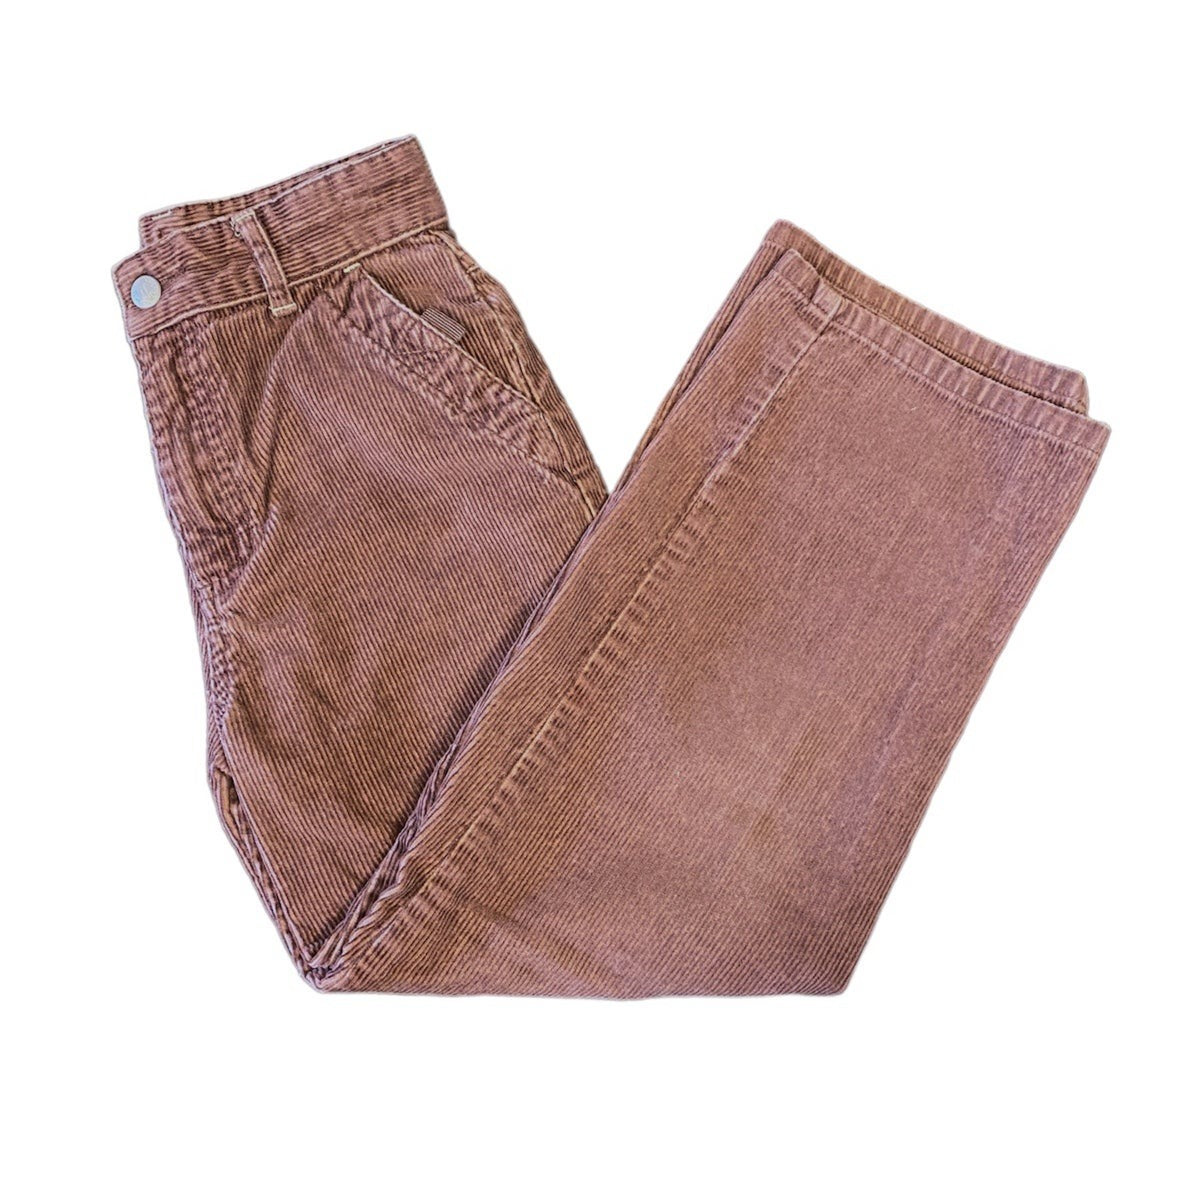 Size 7 boys brown corduroy pants